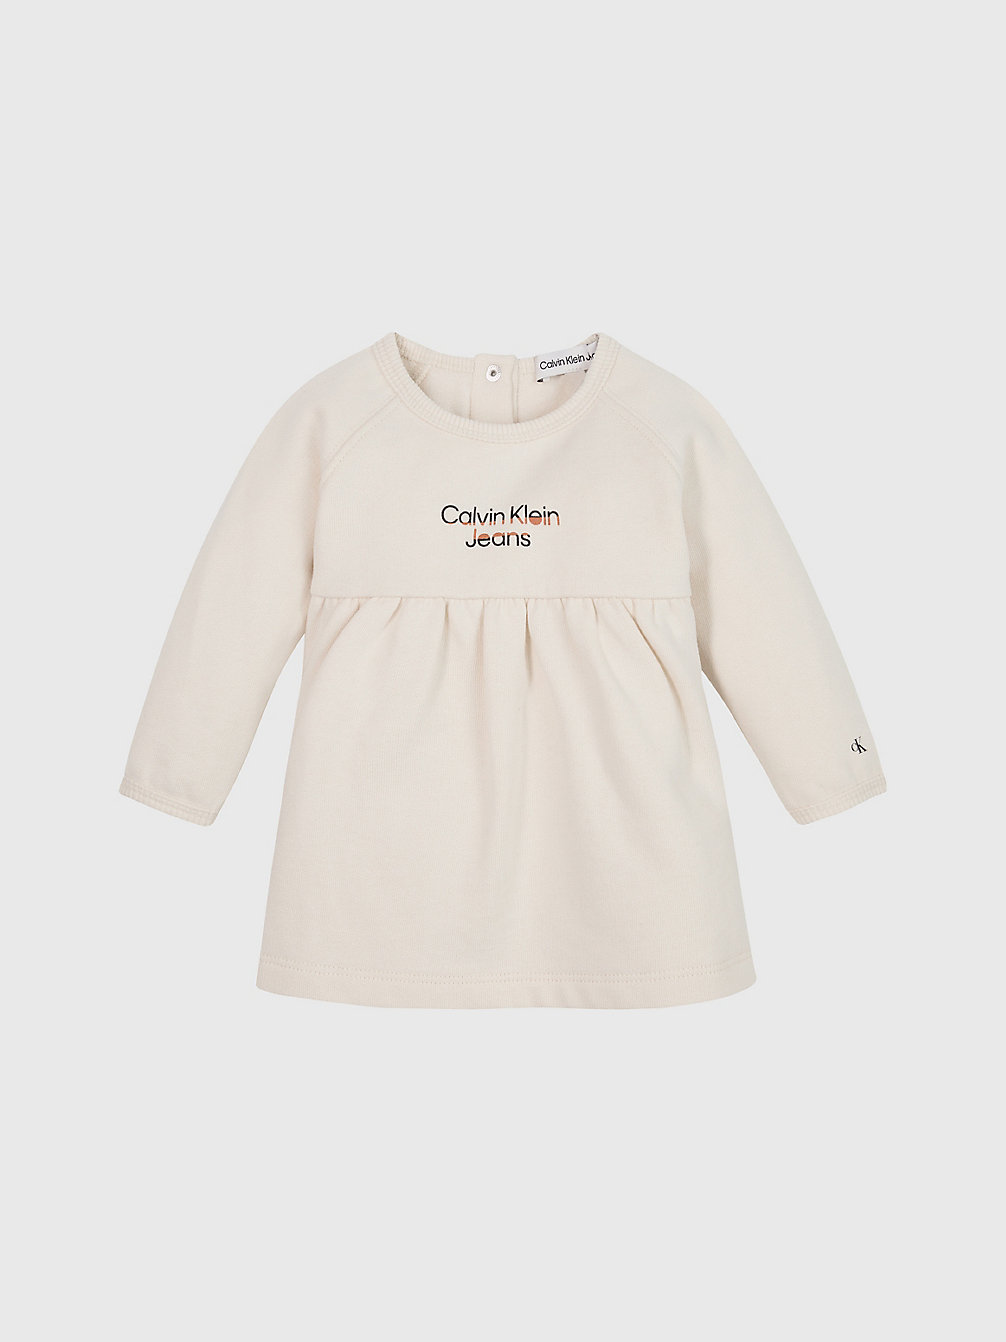 WHITECAP GRAY > Fleece Newborn-Jurk Met Logo > undefined undefined - Calvin Klein